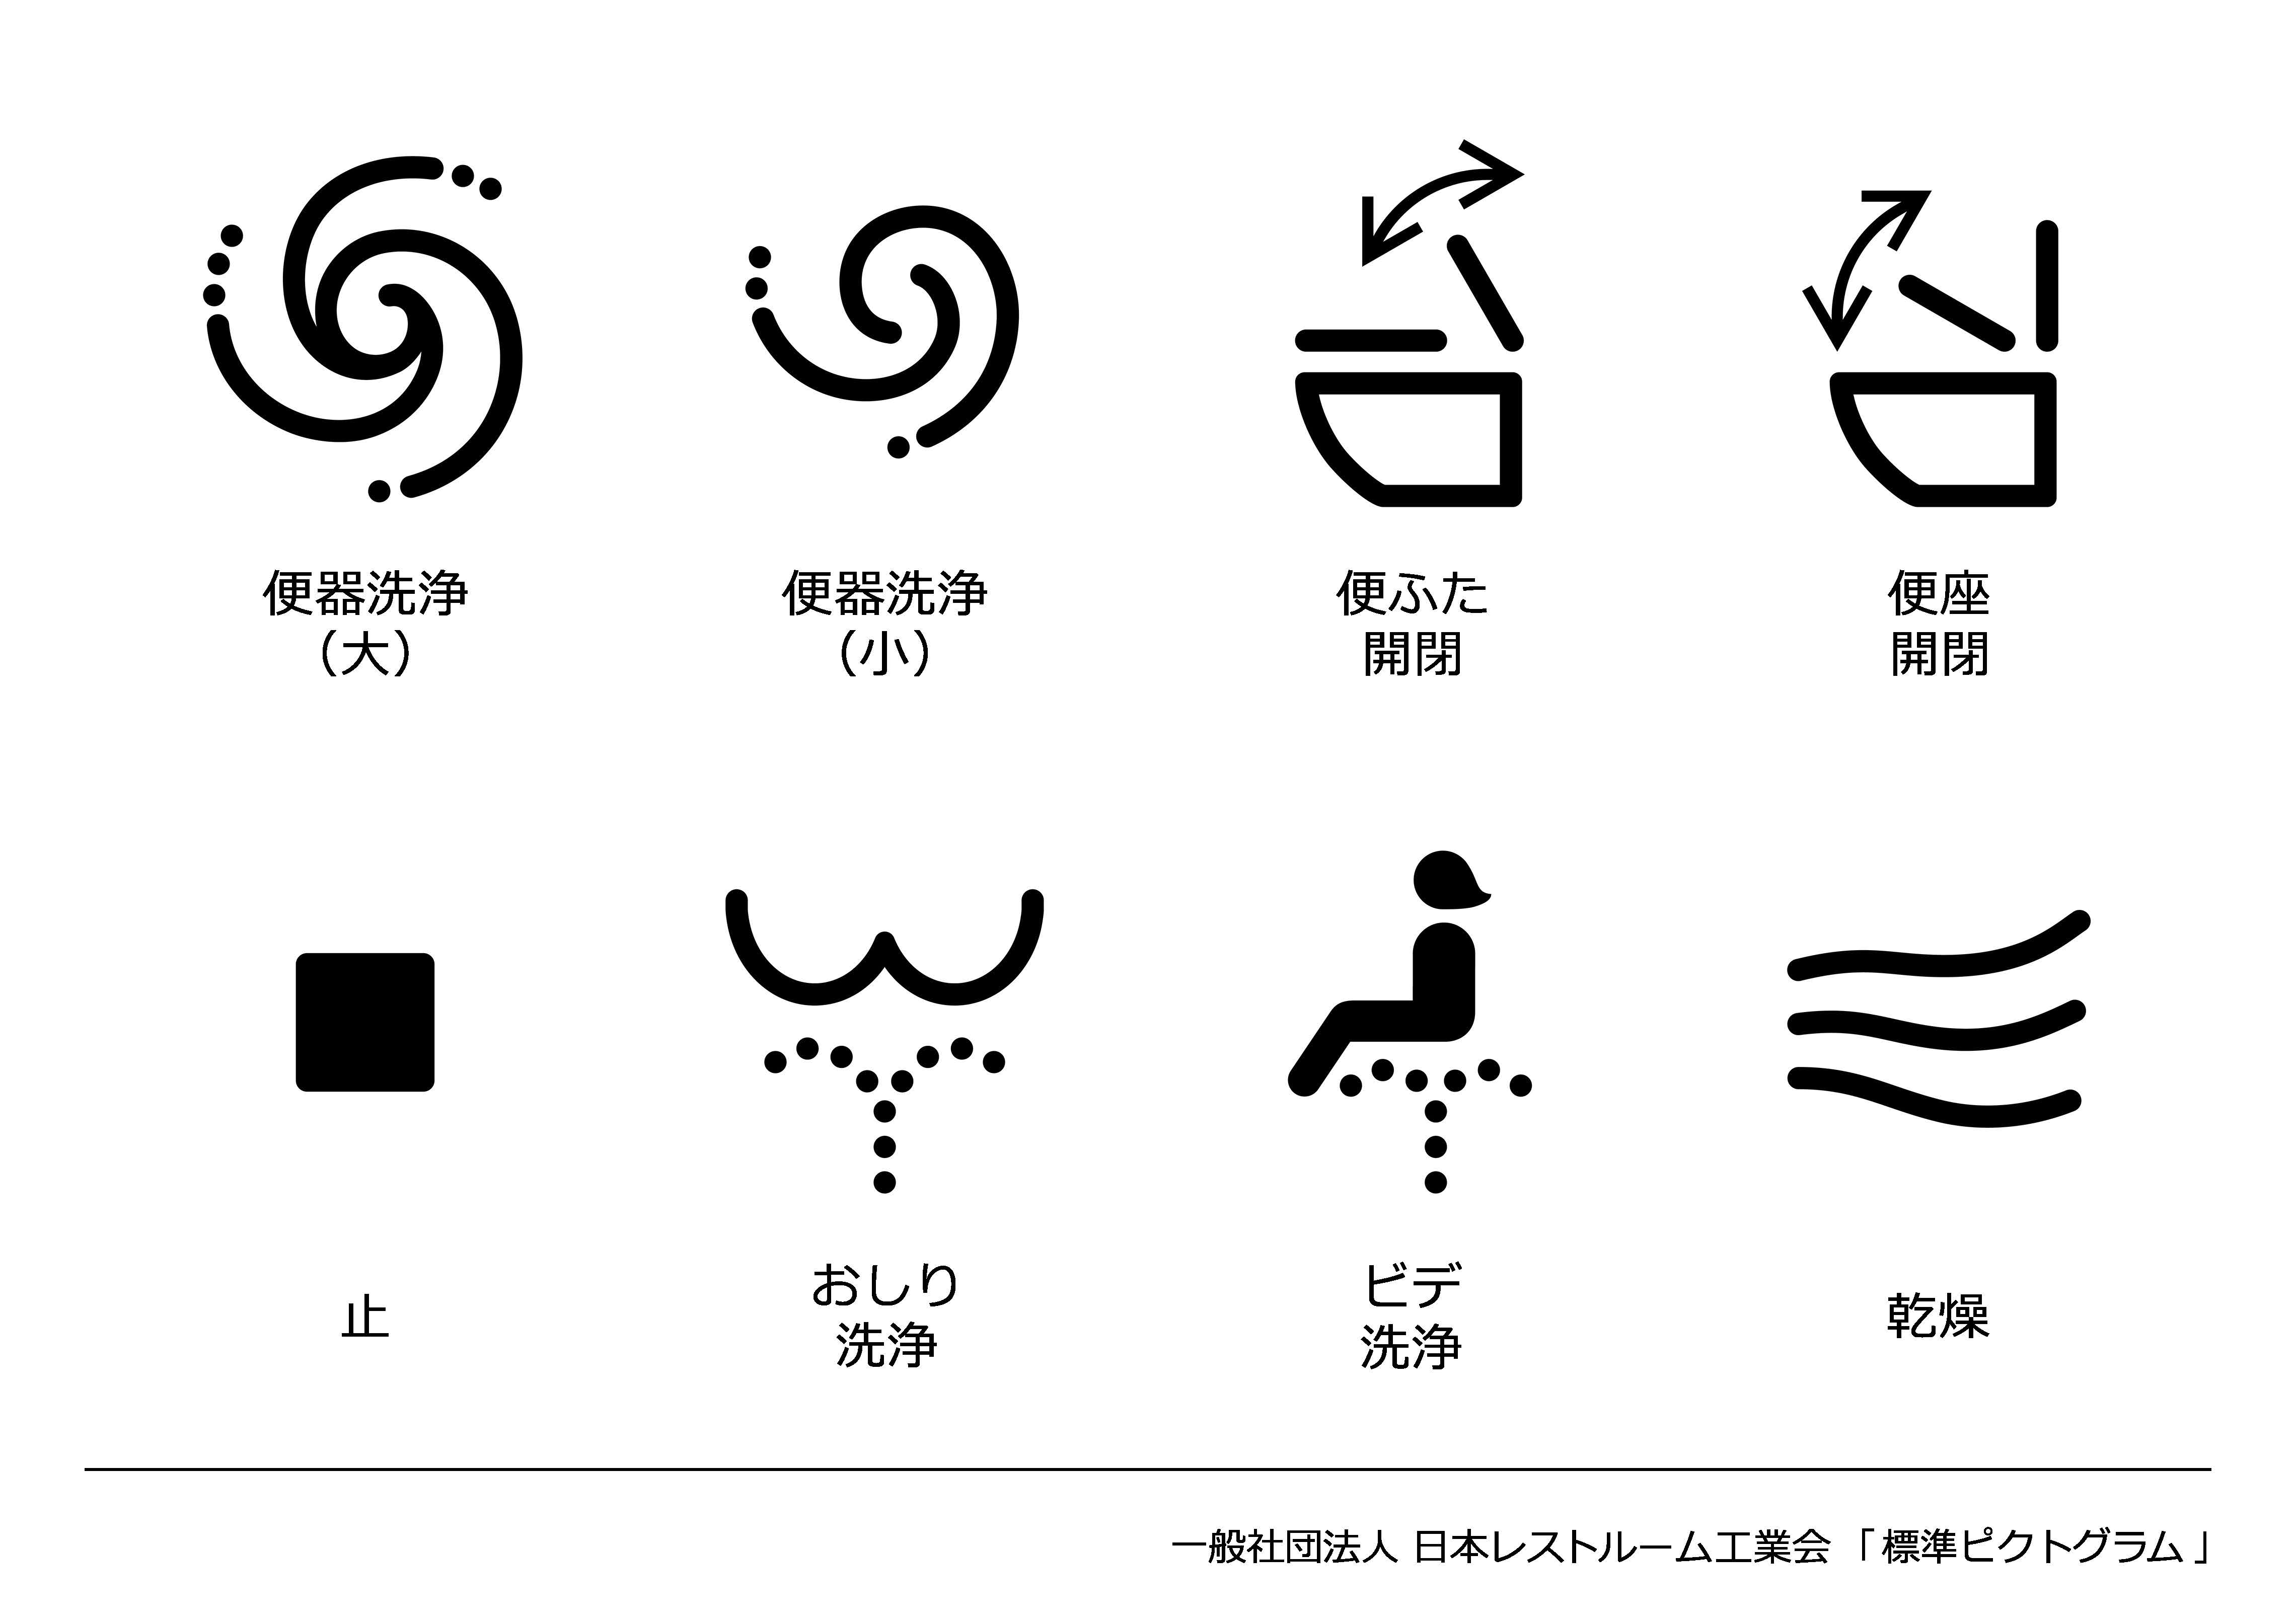 Die neuen vereinheitlichten Symbole für die Hightech-Toilette.